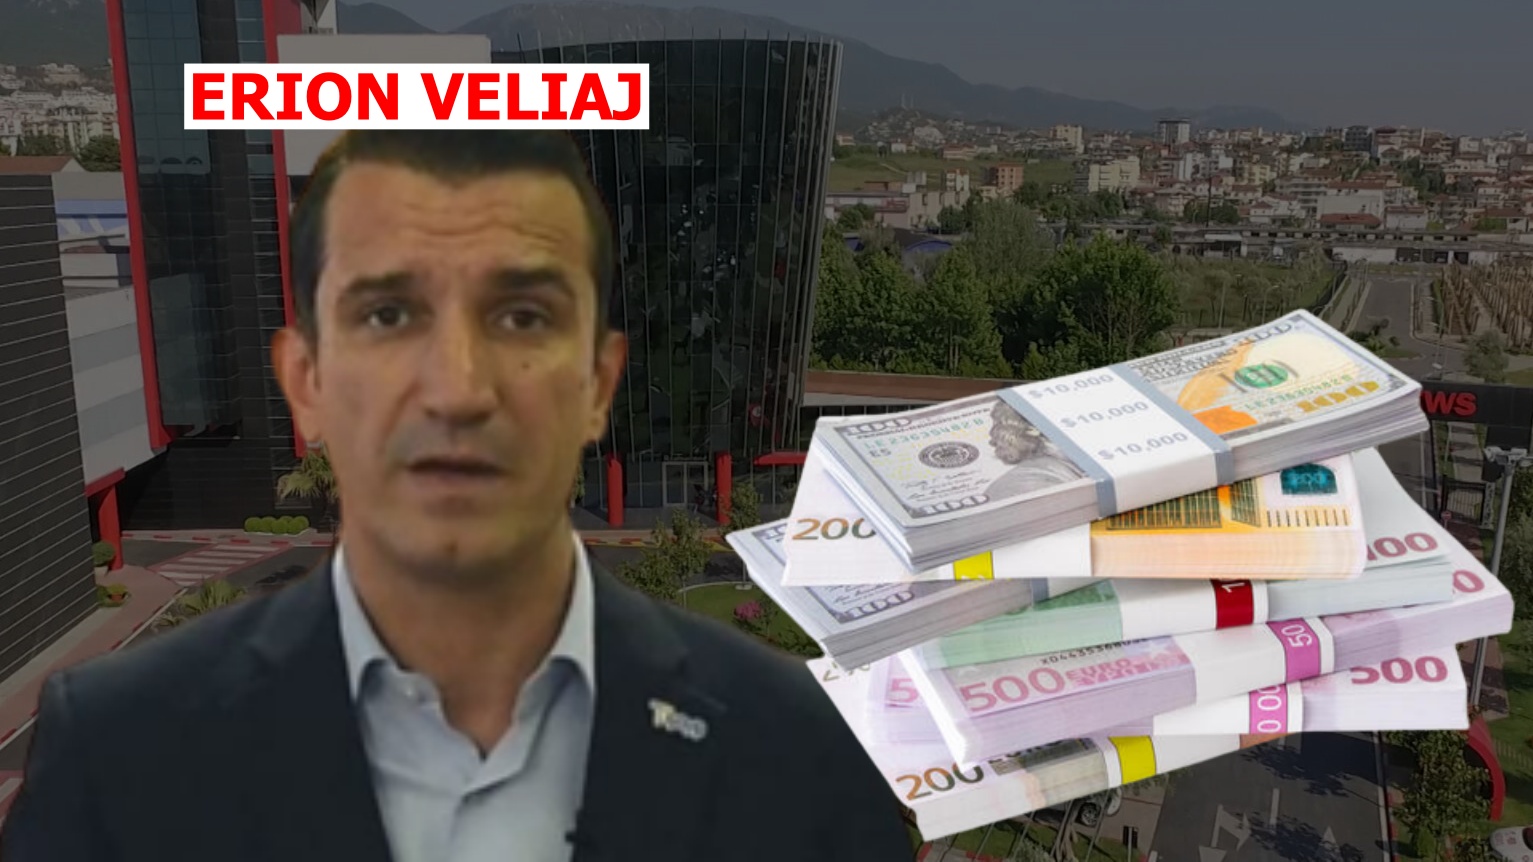 Shqipëria rrezikon të humbasë 130 MLN EURO për kapricon e Erion Veliajt!